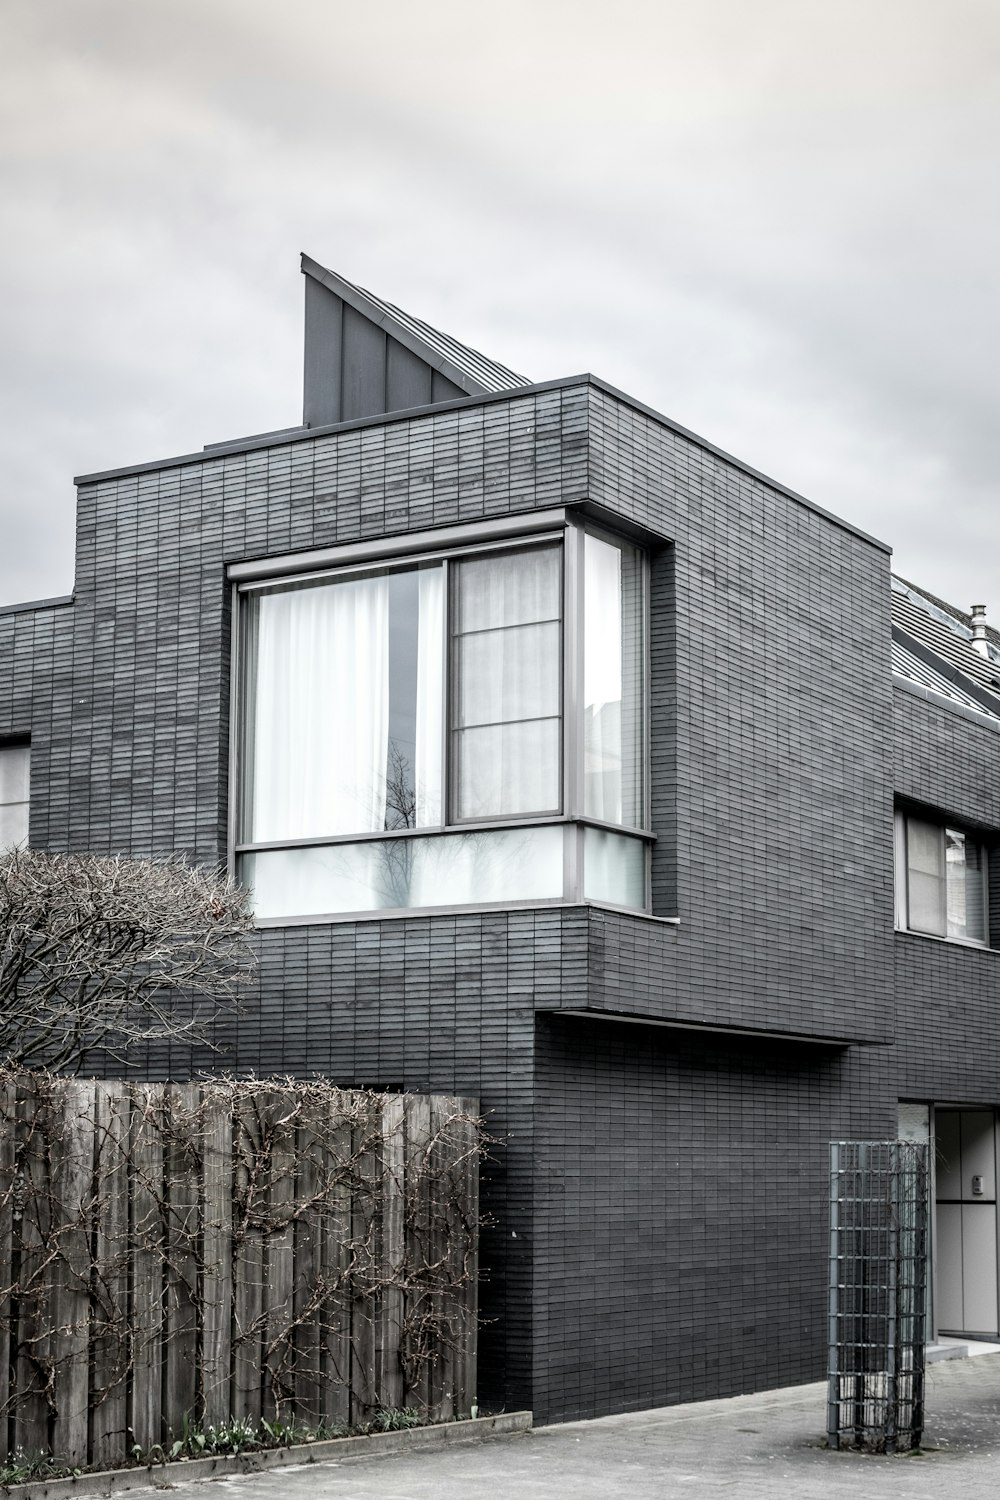 Photographie en niveaux de gris d’une maison de 2 étages